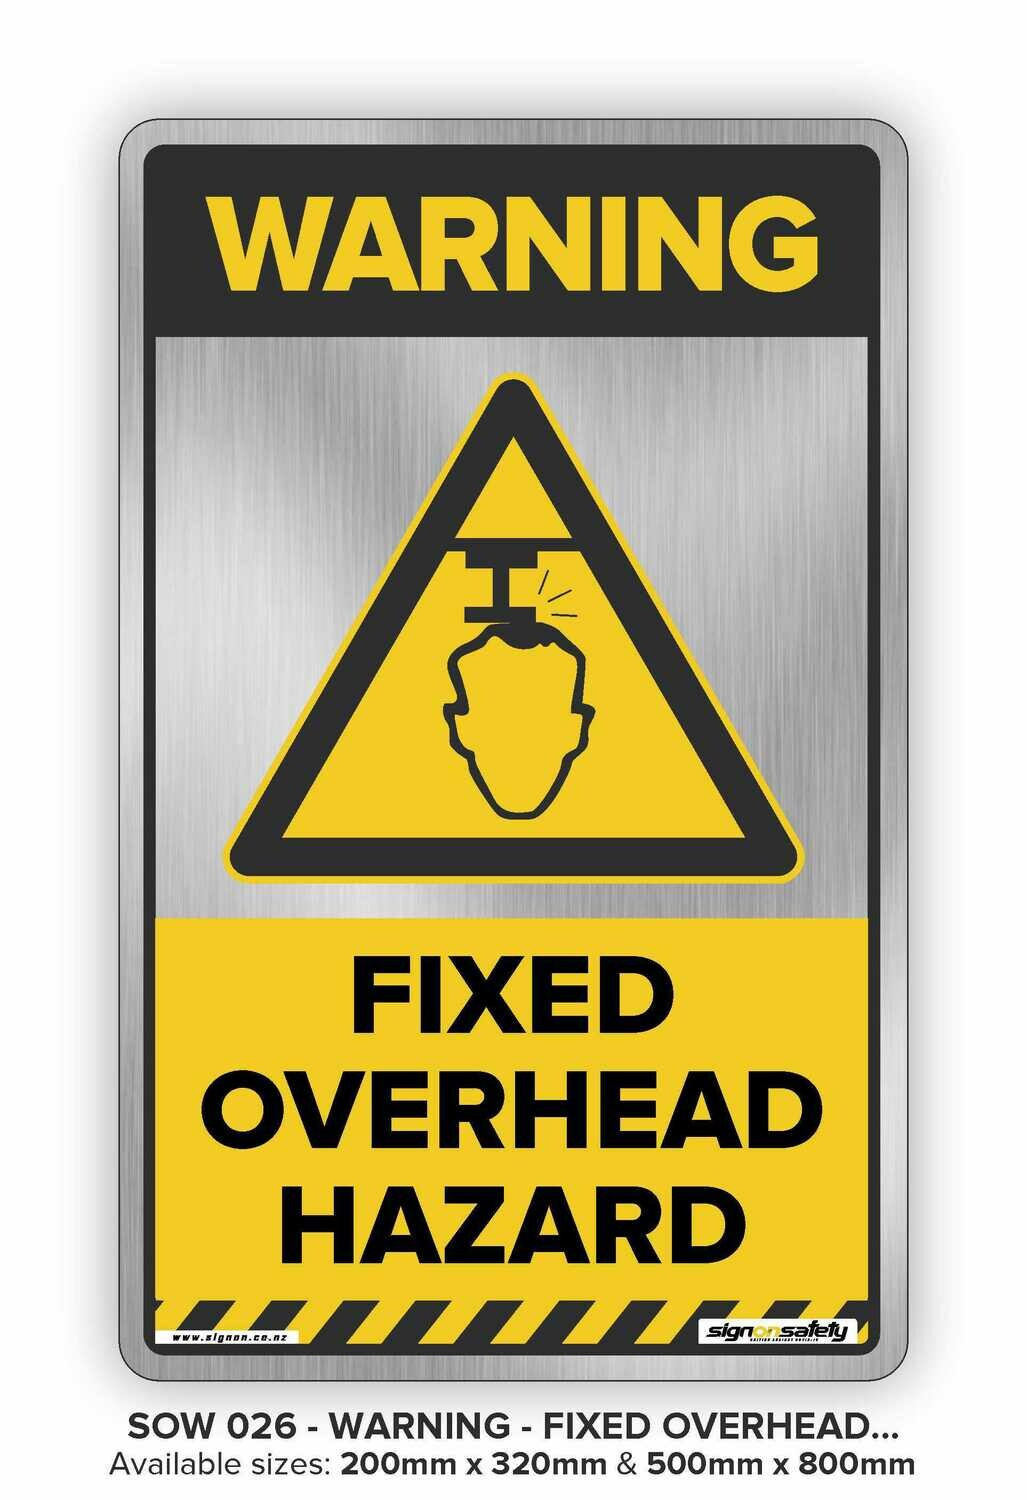 Warning - Fixed Overhead Hazard